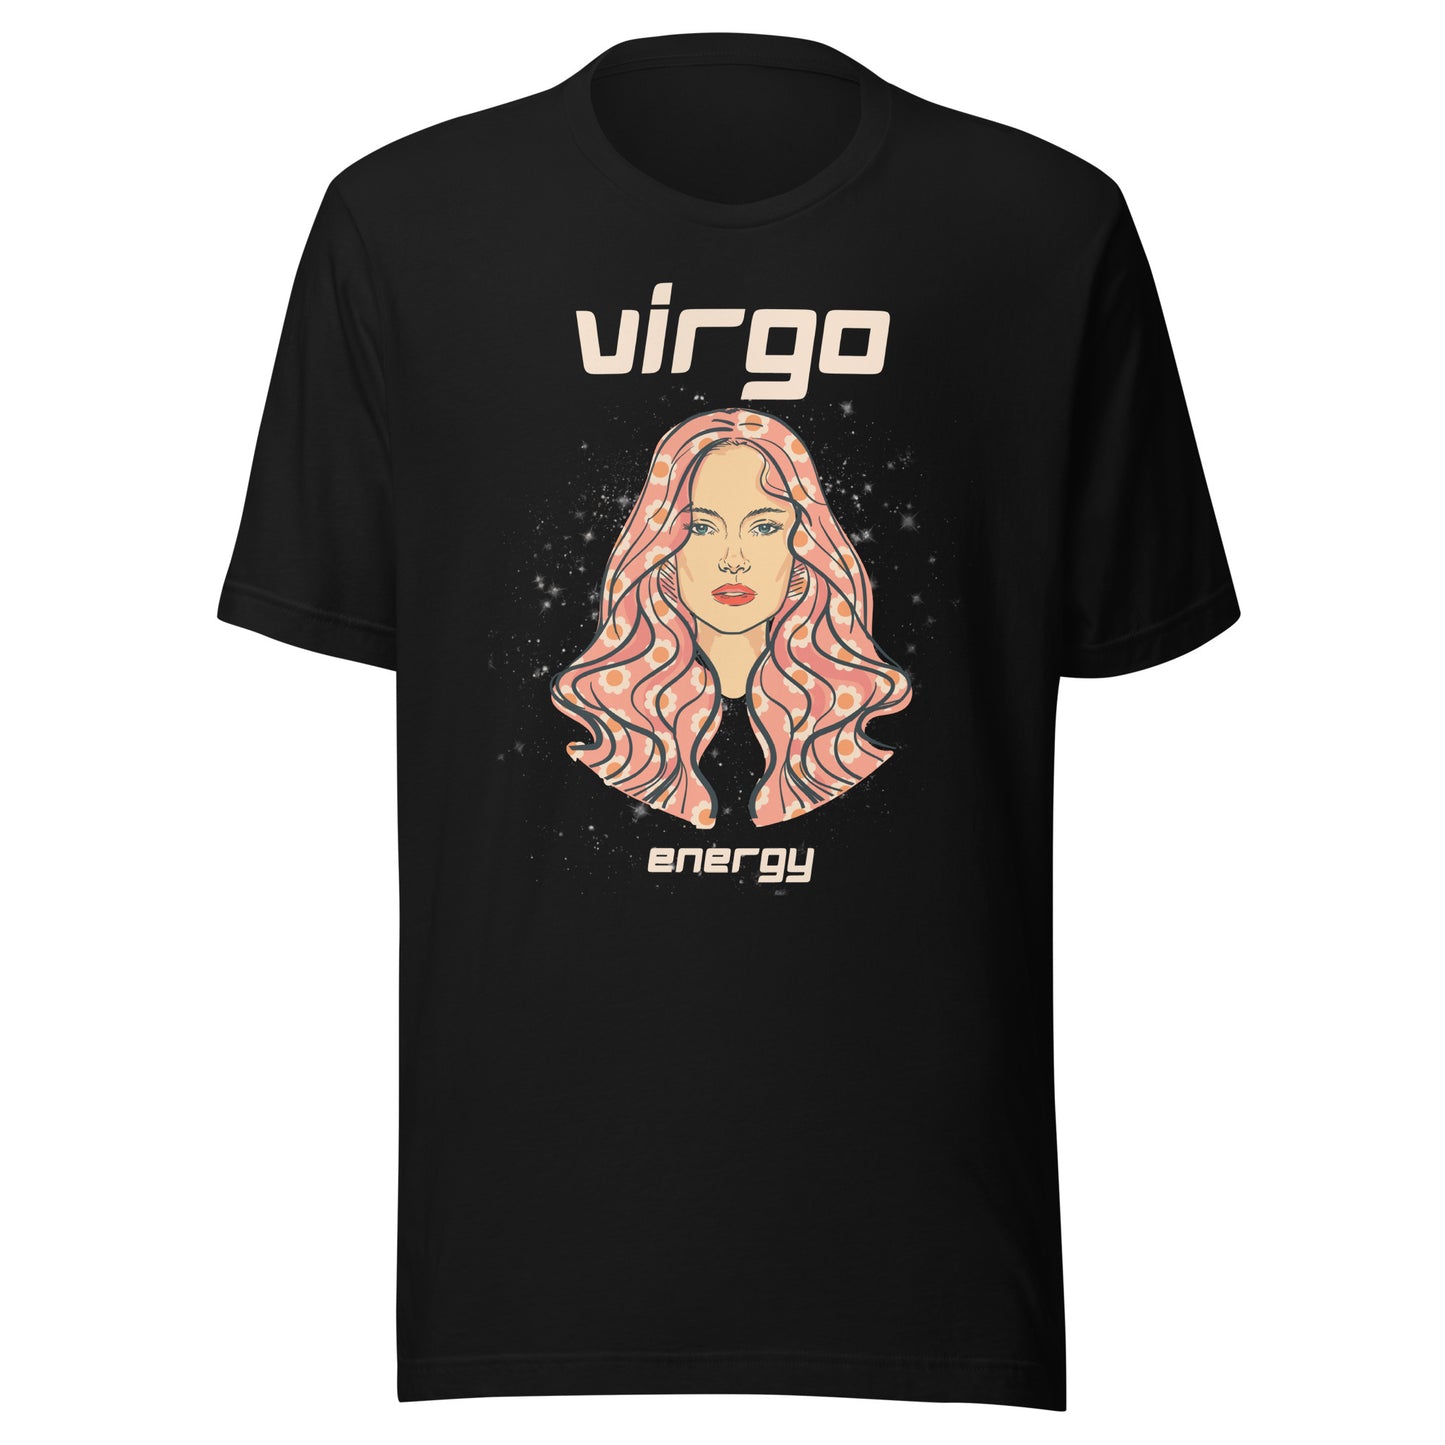 Virgo Energy- Tee